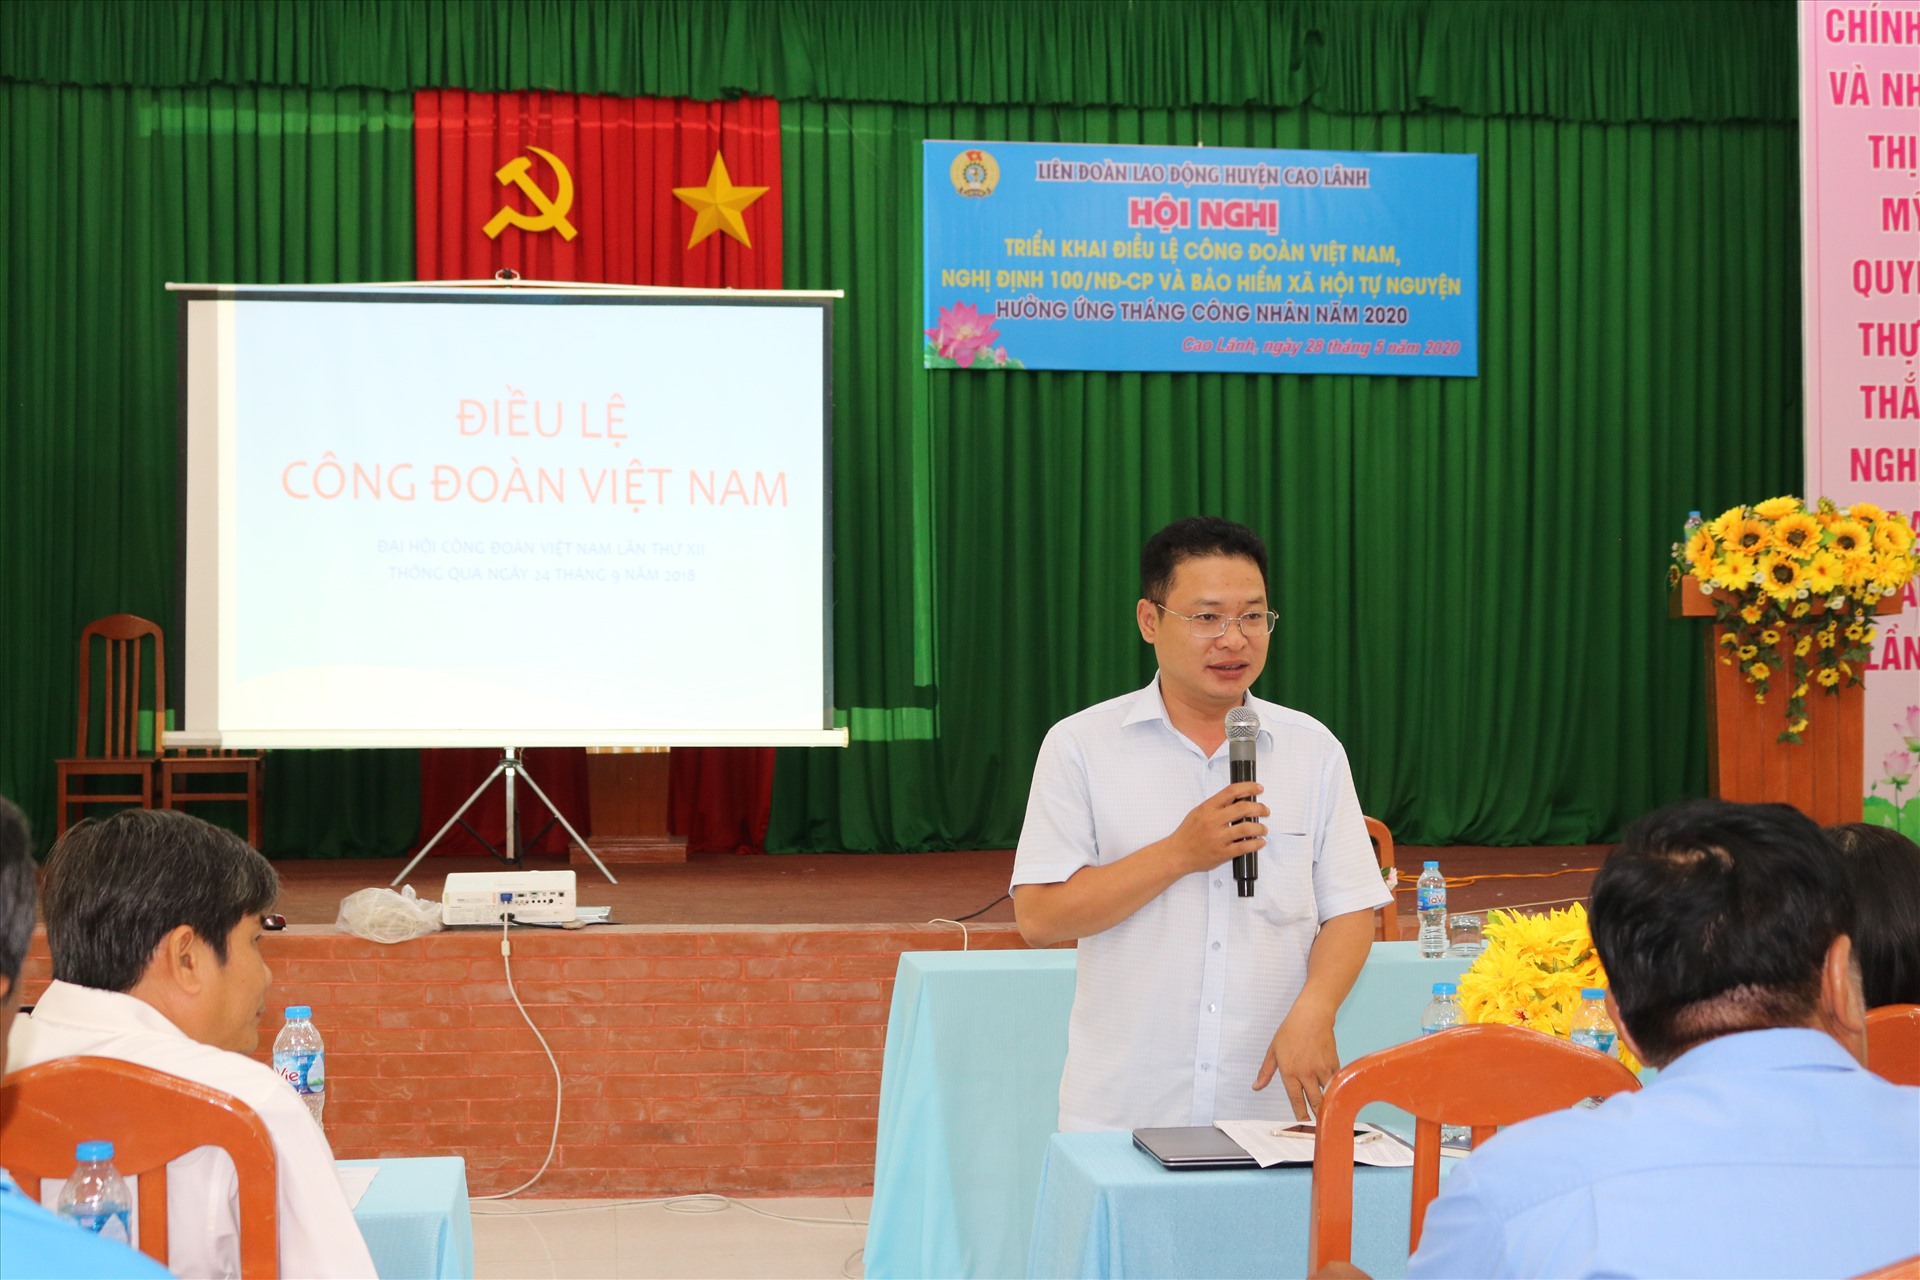 Đồng chí Đoàn Văn Đông - Giám đốc BHXH huyện Cao Lãnh chia sẻ các chính sách về BHXH. Ảnh: HL